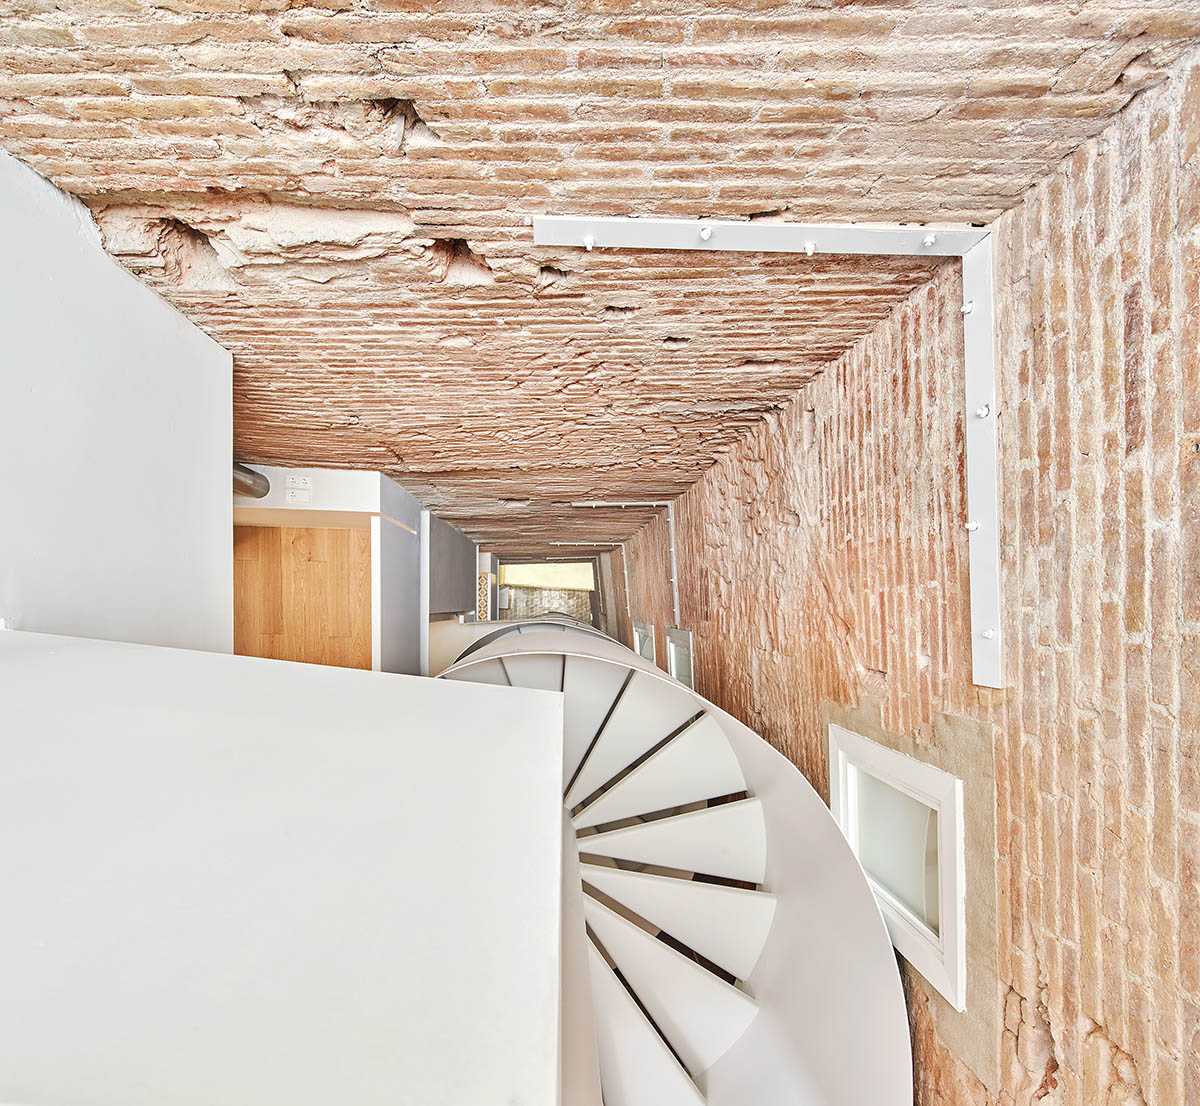 Рауль Санчес обновляет старую квартиру с золотыми тоннами и винтовой лестницей, чтобы создать необработанные интерьеры.